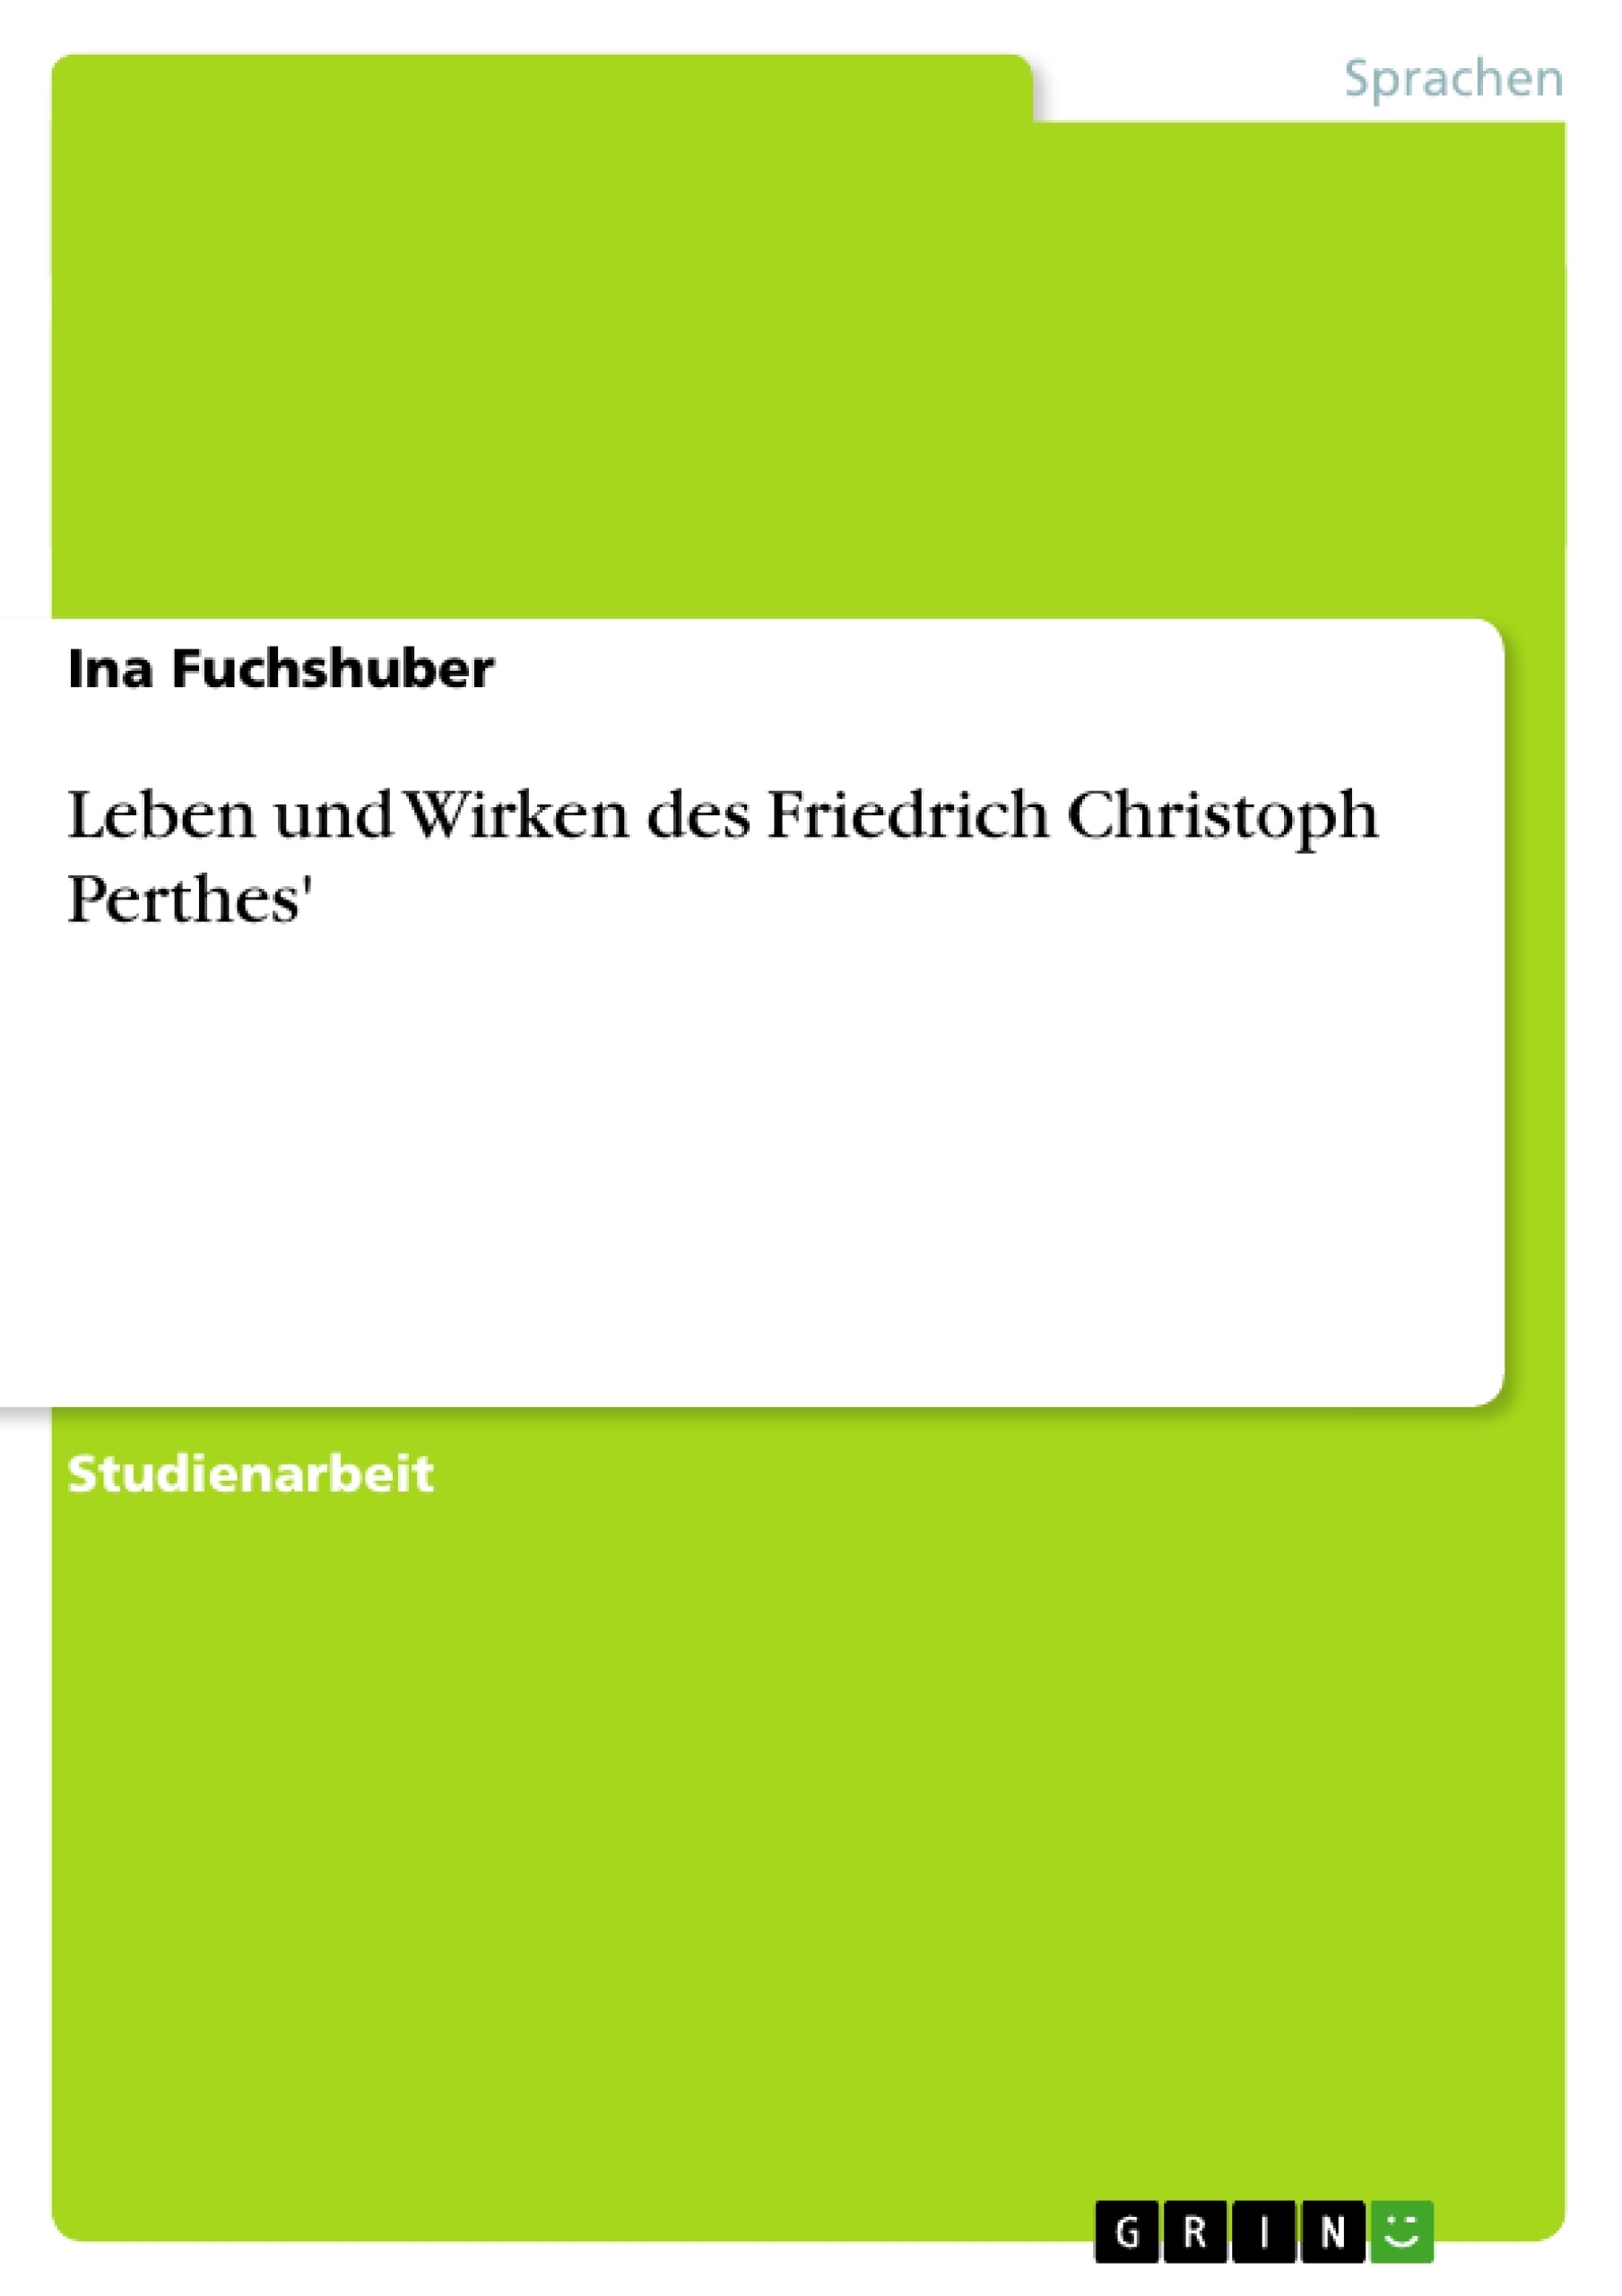 Titel: Leben und Wirken des Friedrich Christoph Perthes'